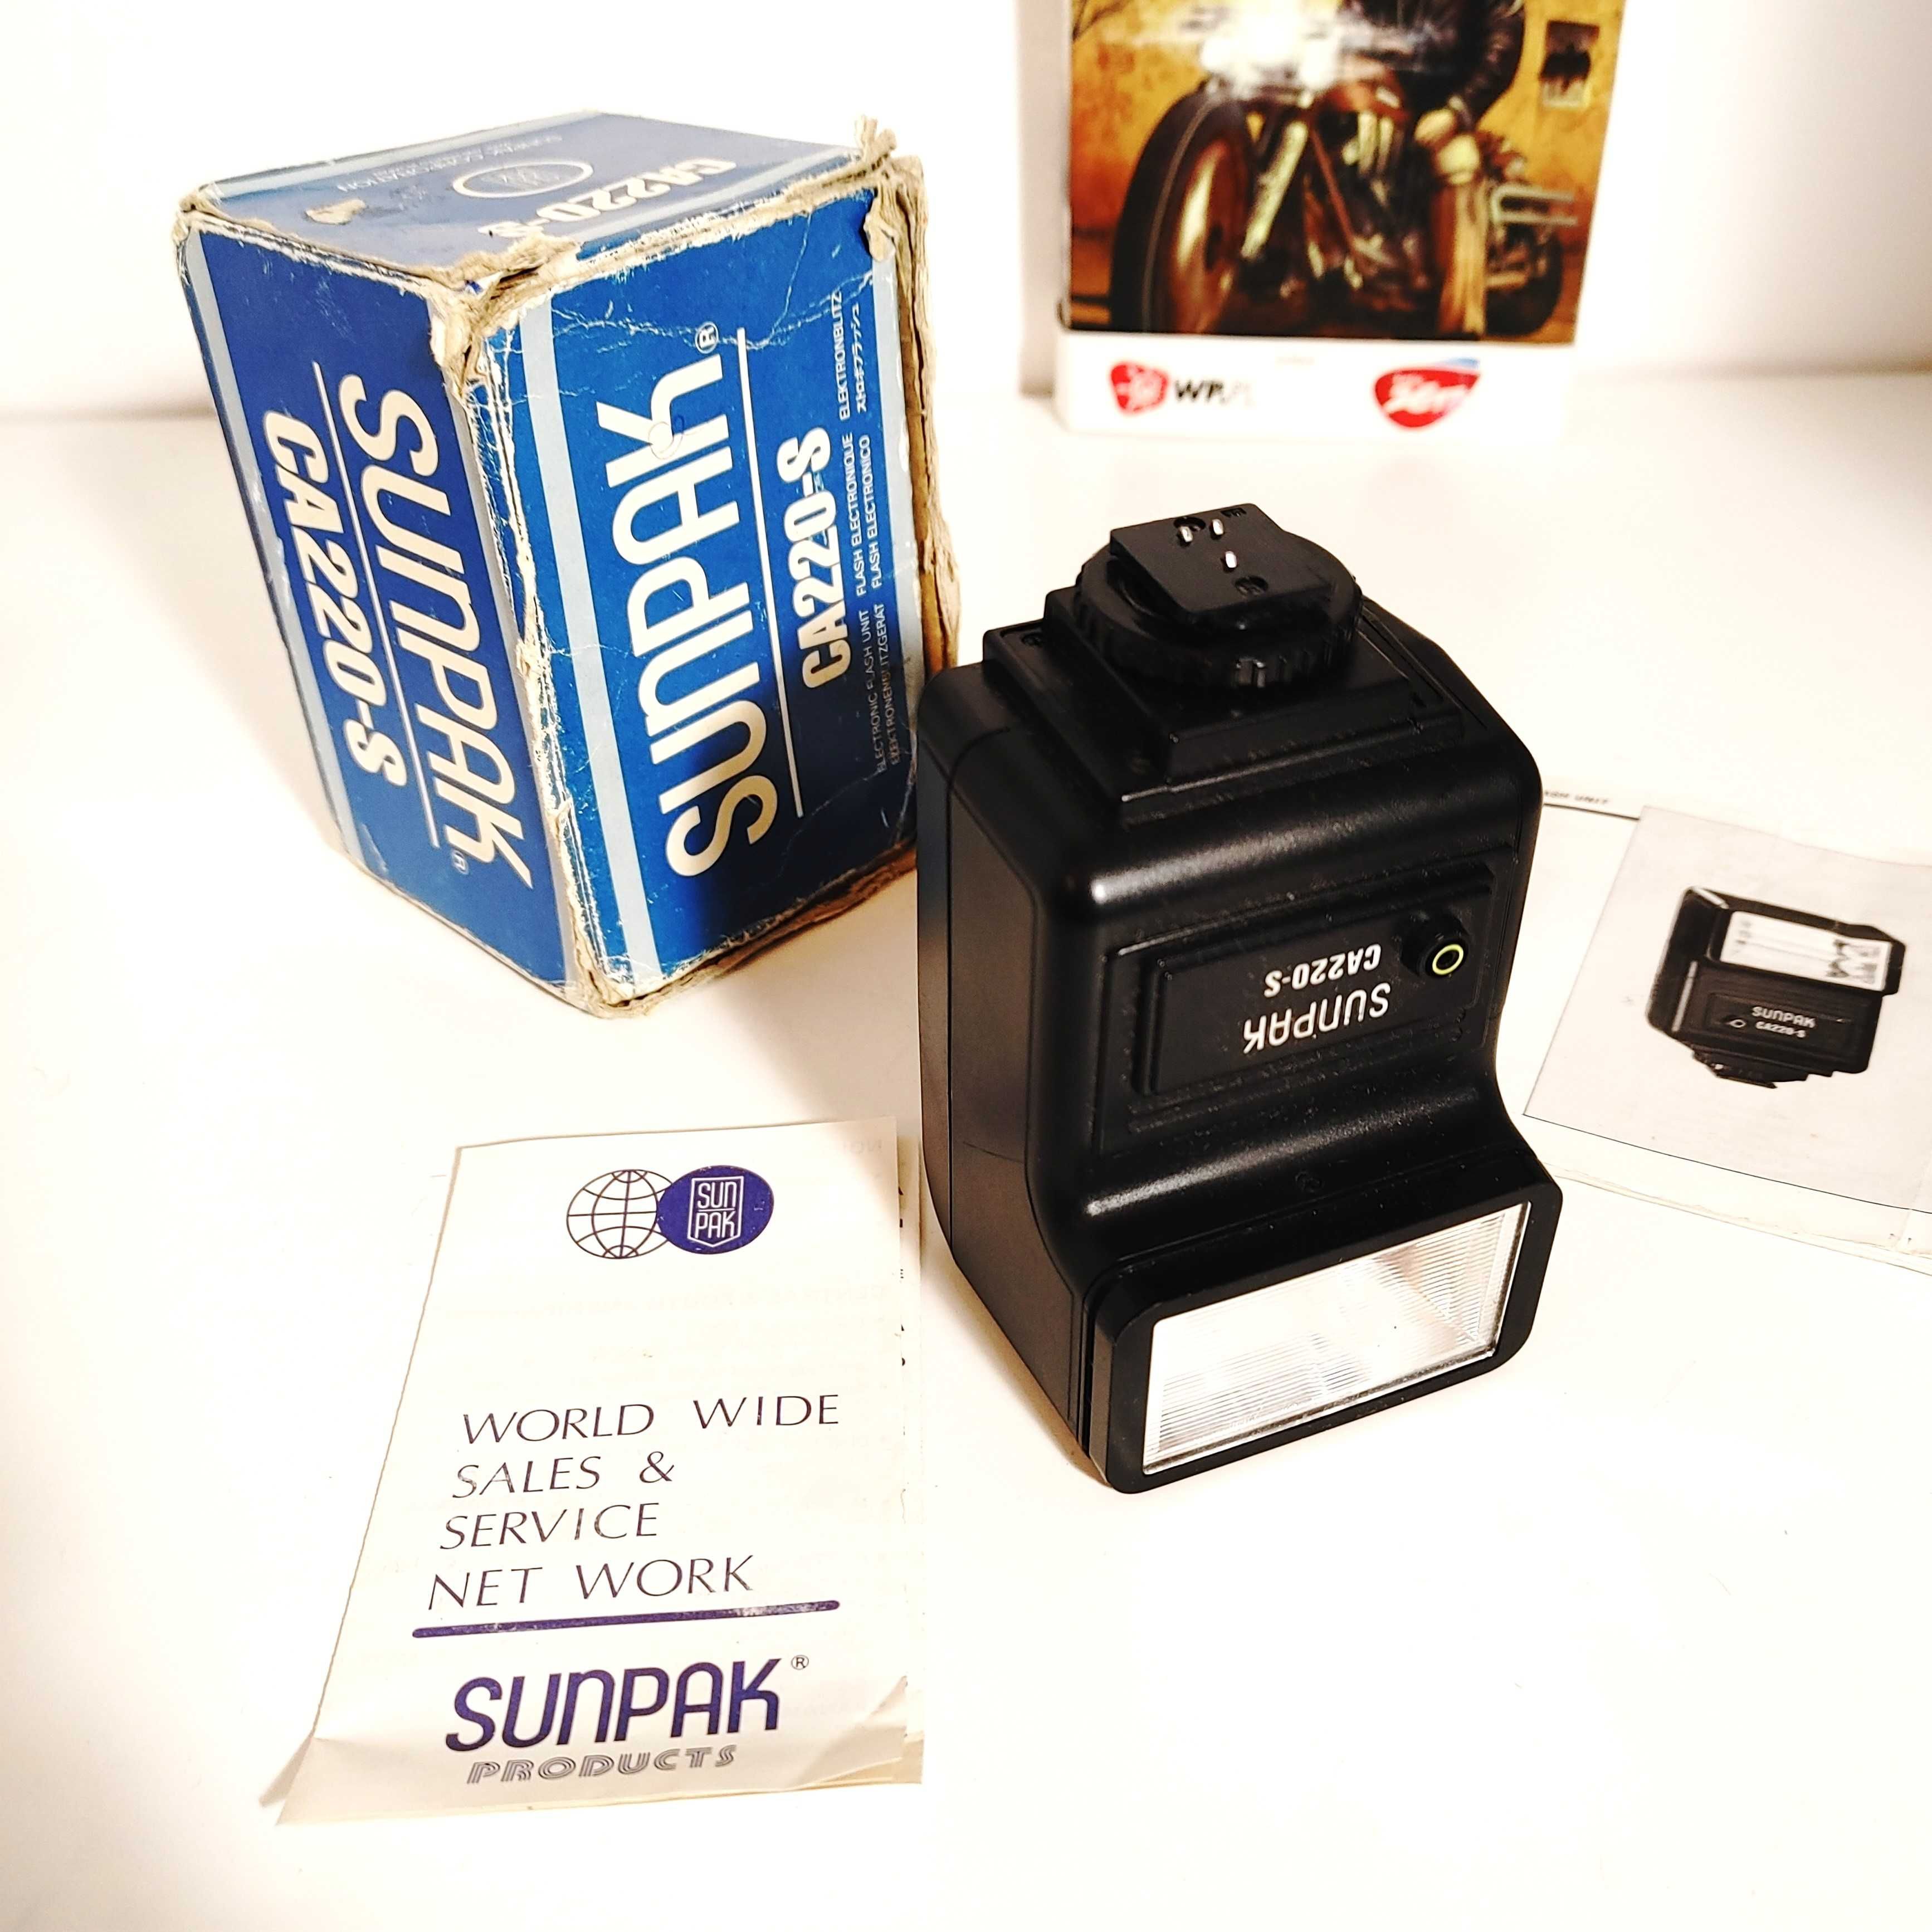 Lampa błyskowa SunPak CA220-S do klasycznych aparatów fotograficznych